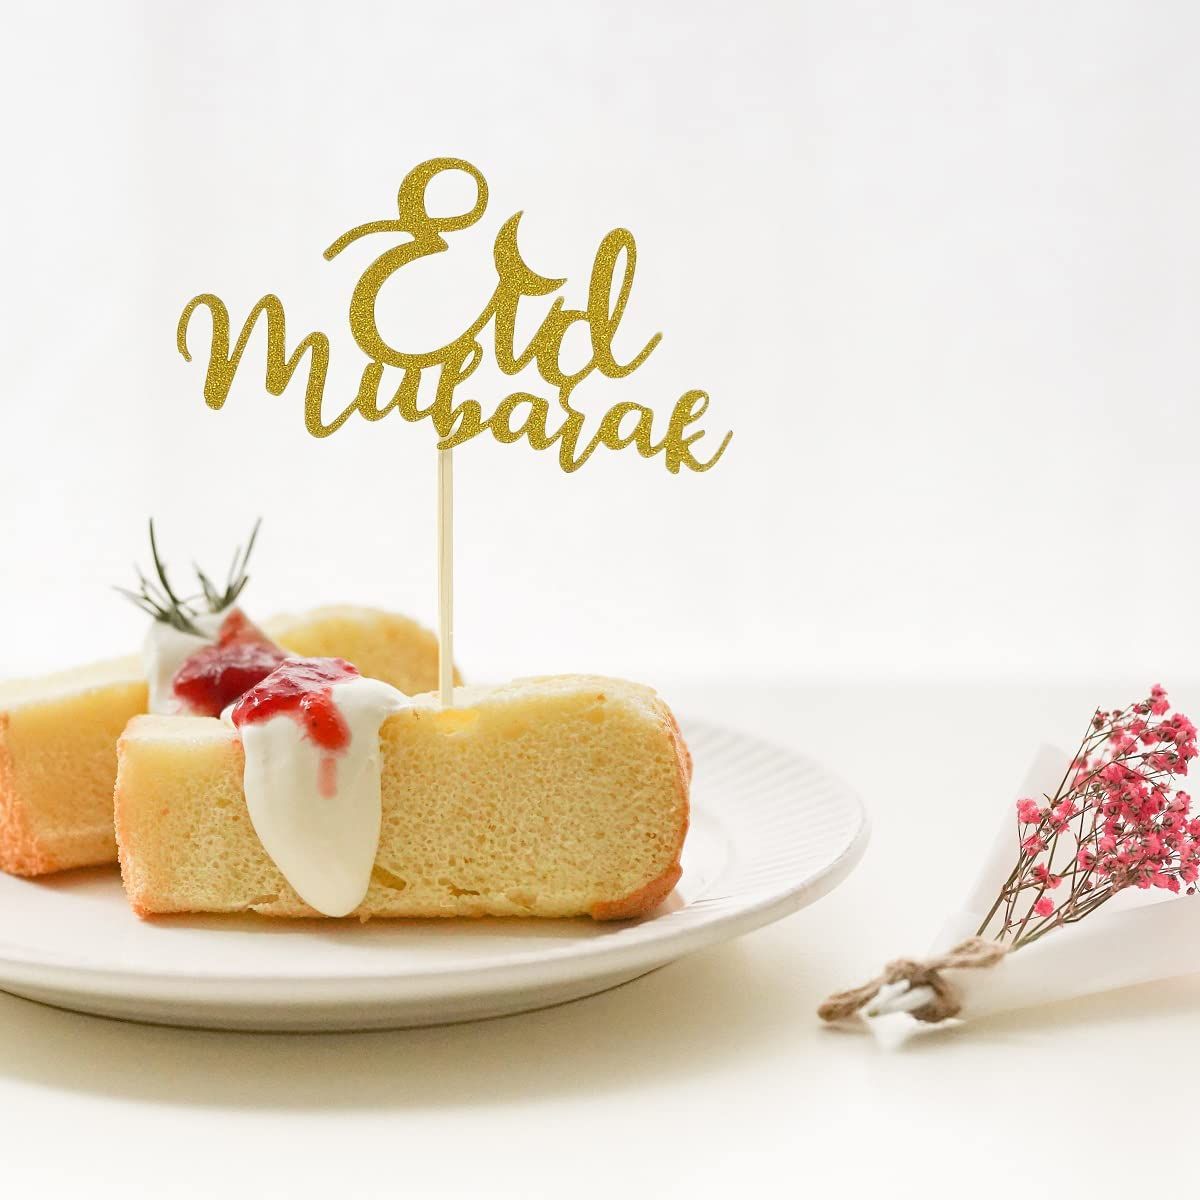 5 件裝閃亮開齋節穆巴拉克蛋糕禮帽用於開齋節烘焙蛋糕水果裝飾伊斯蘭派對裝飾